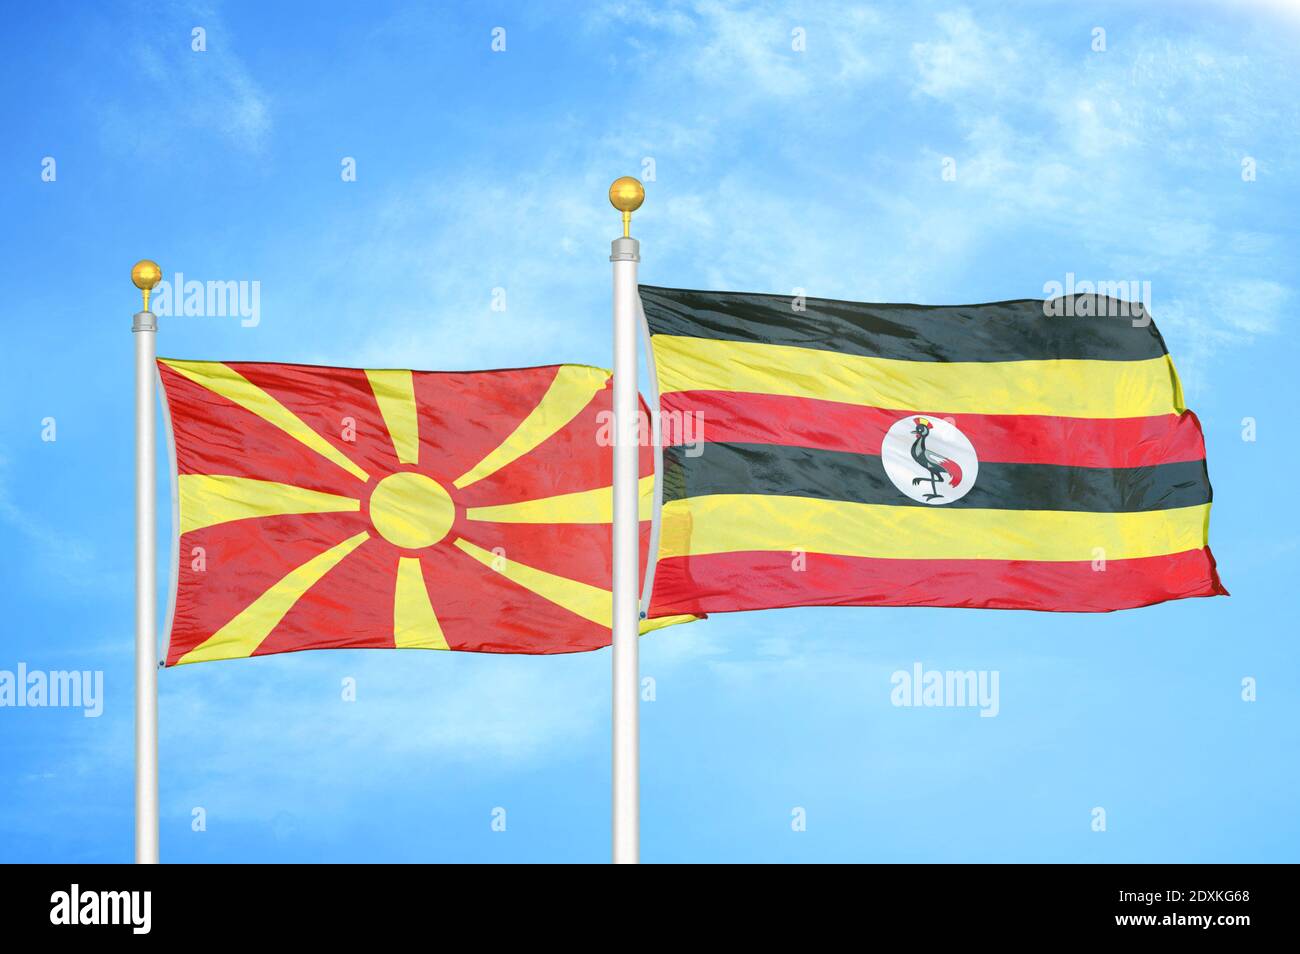 Norte de Macedonia y Uganda dos banderas en los polos de bandera y azul cielo Foto de stock